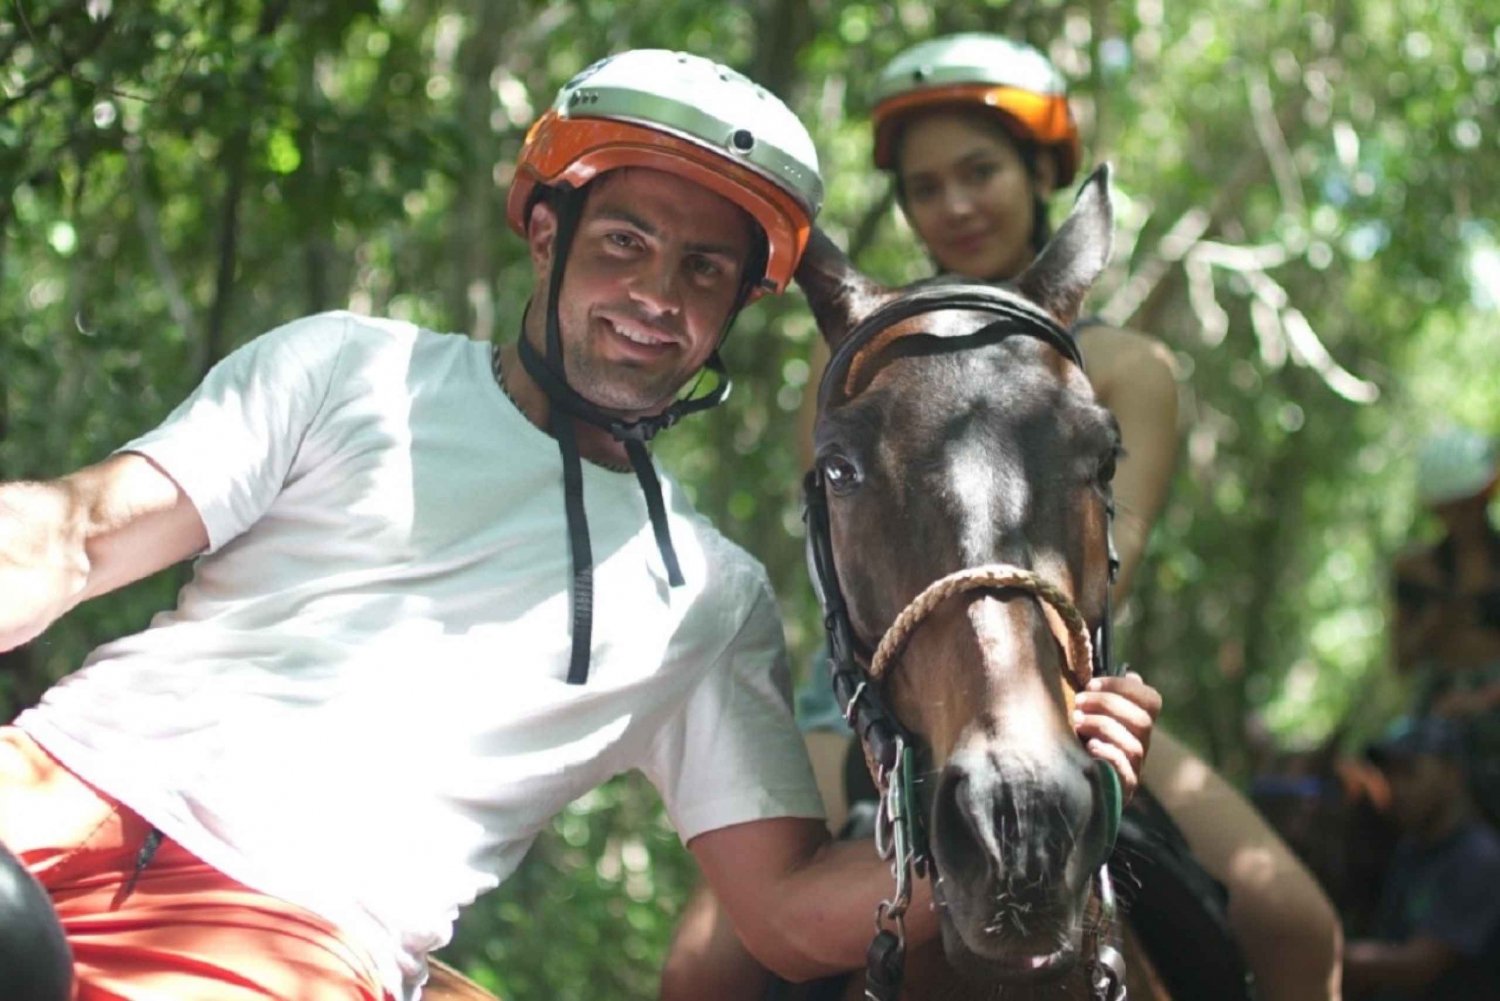 Punta Cana: Swim with Horses Guided Horseback Tour